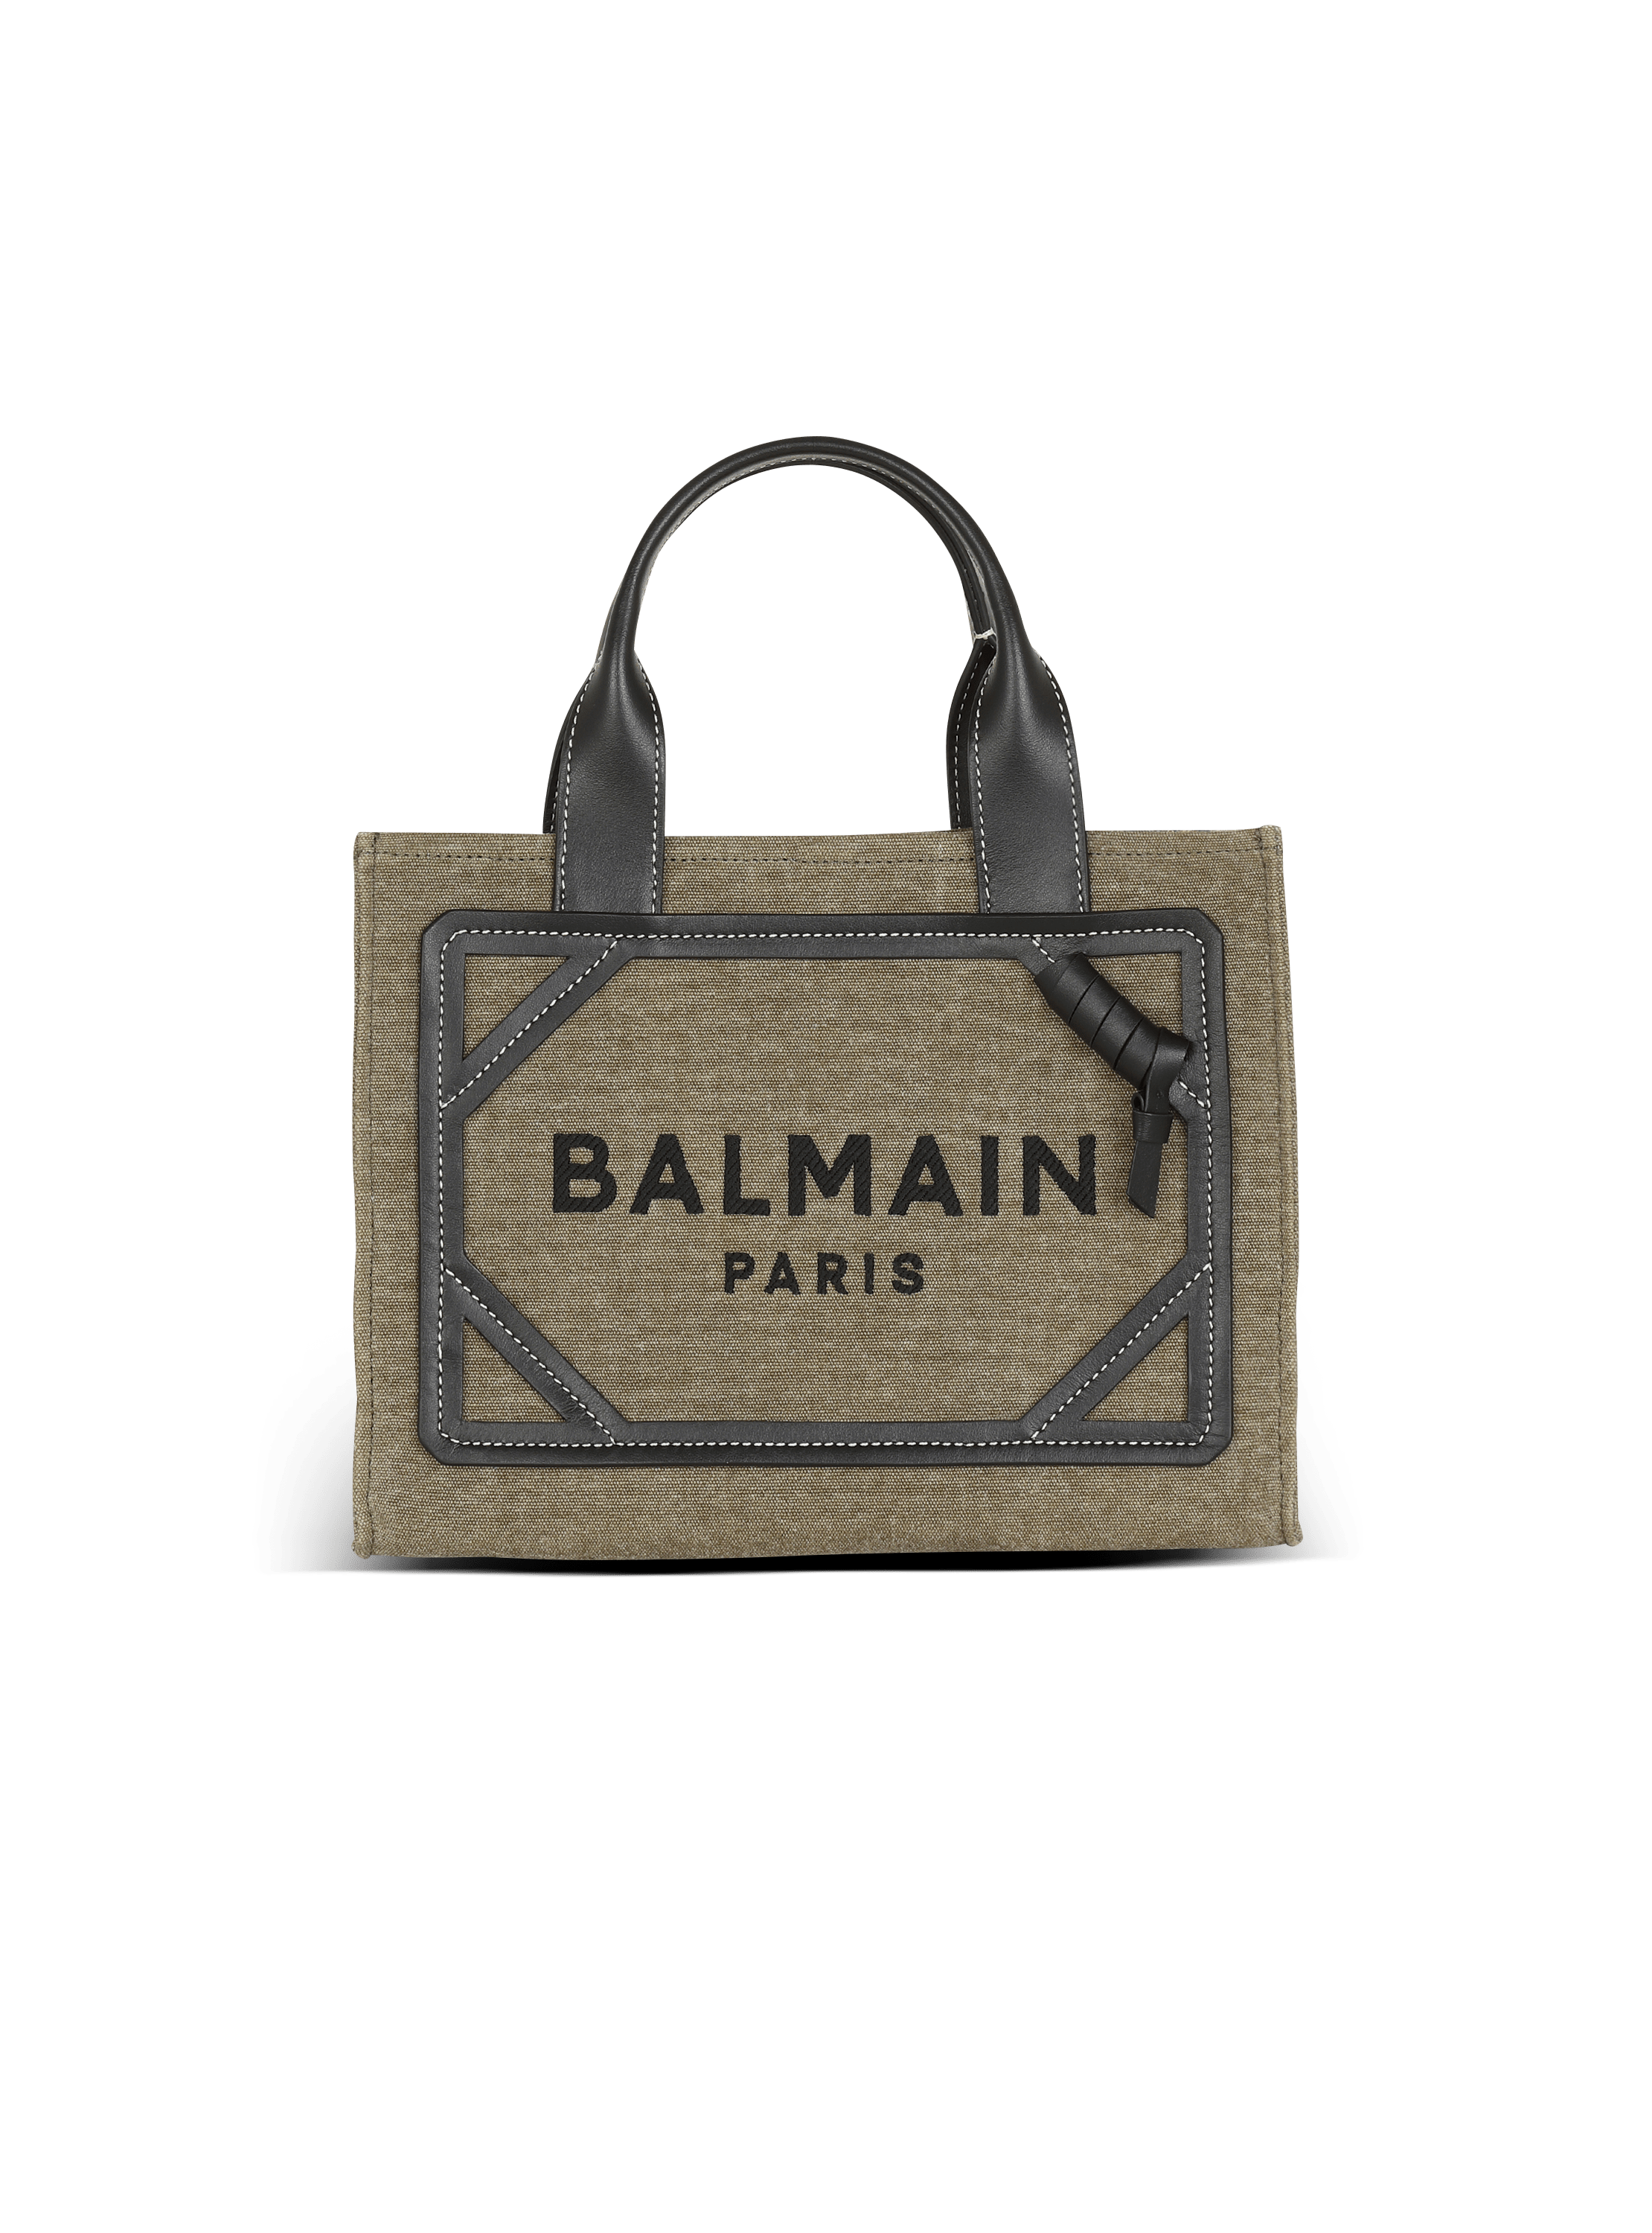 Balmain B-army Mini Tote Bag in Natural